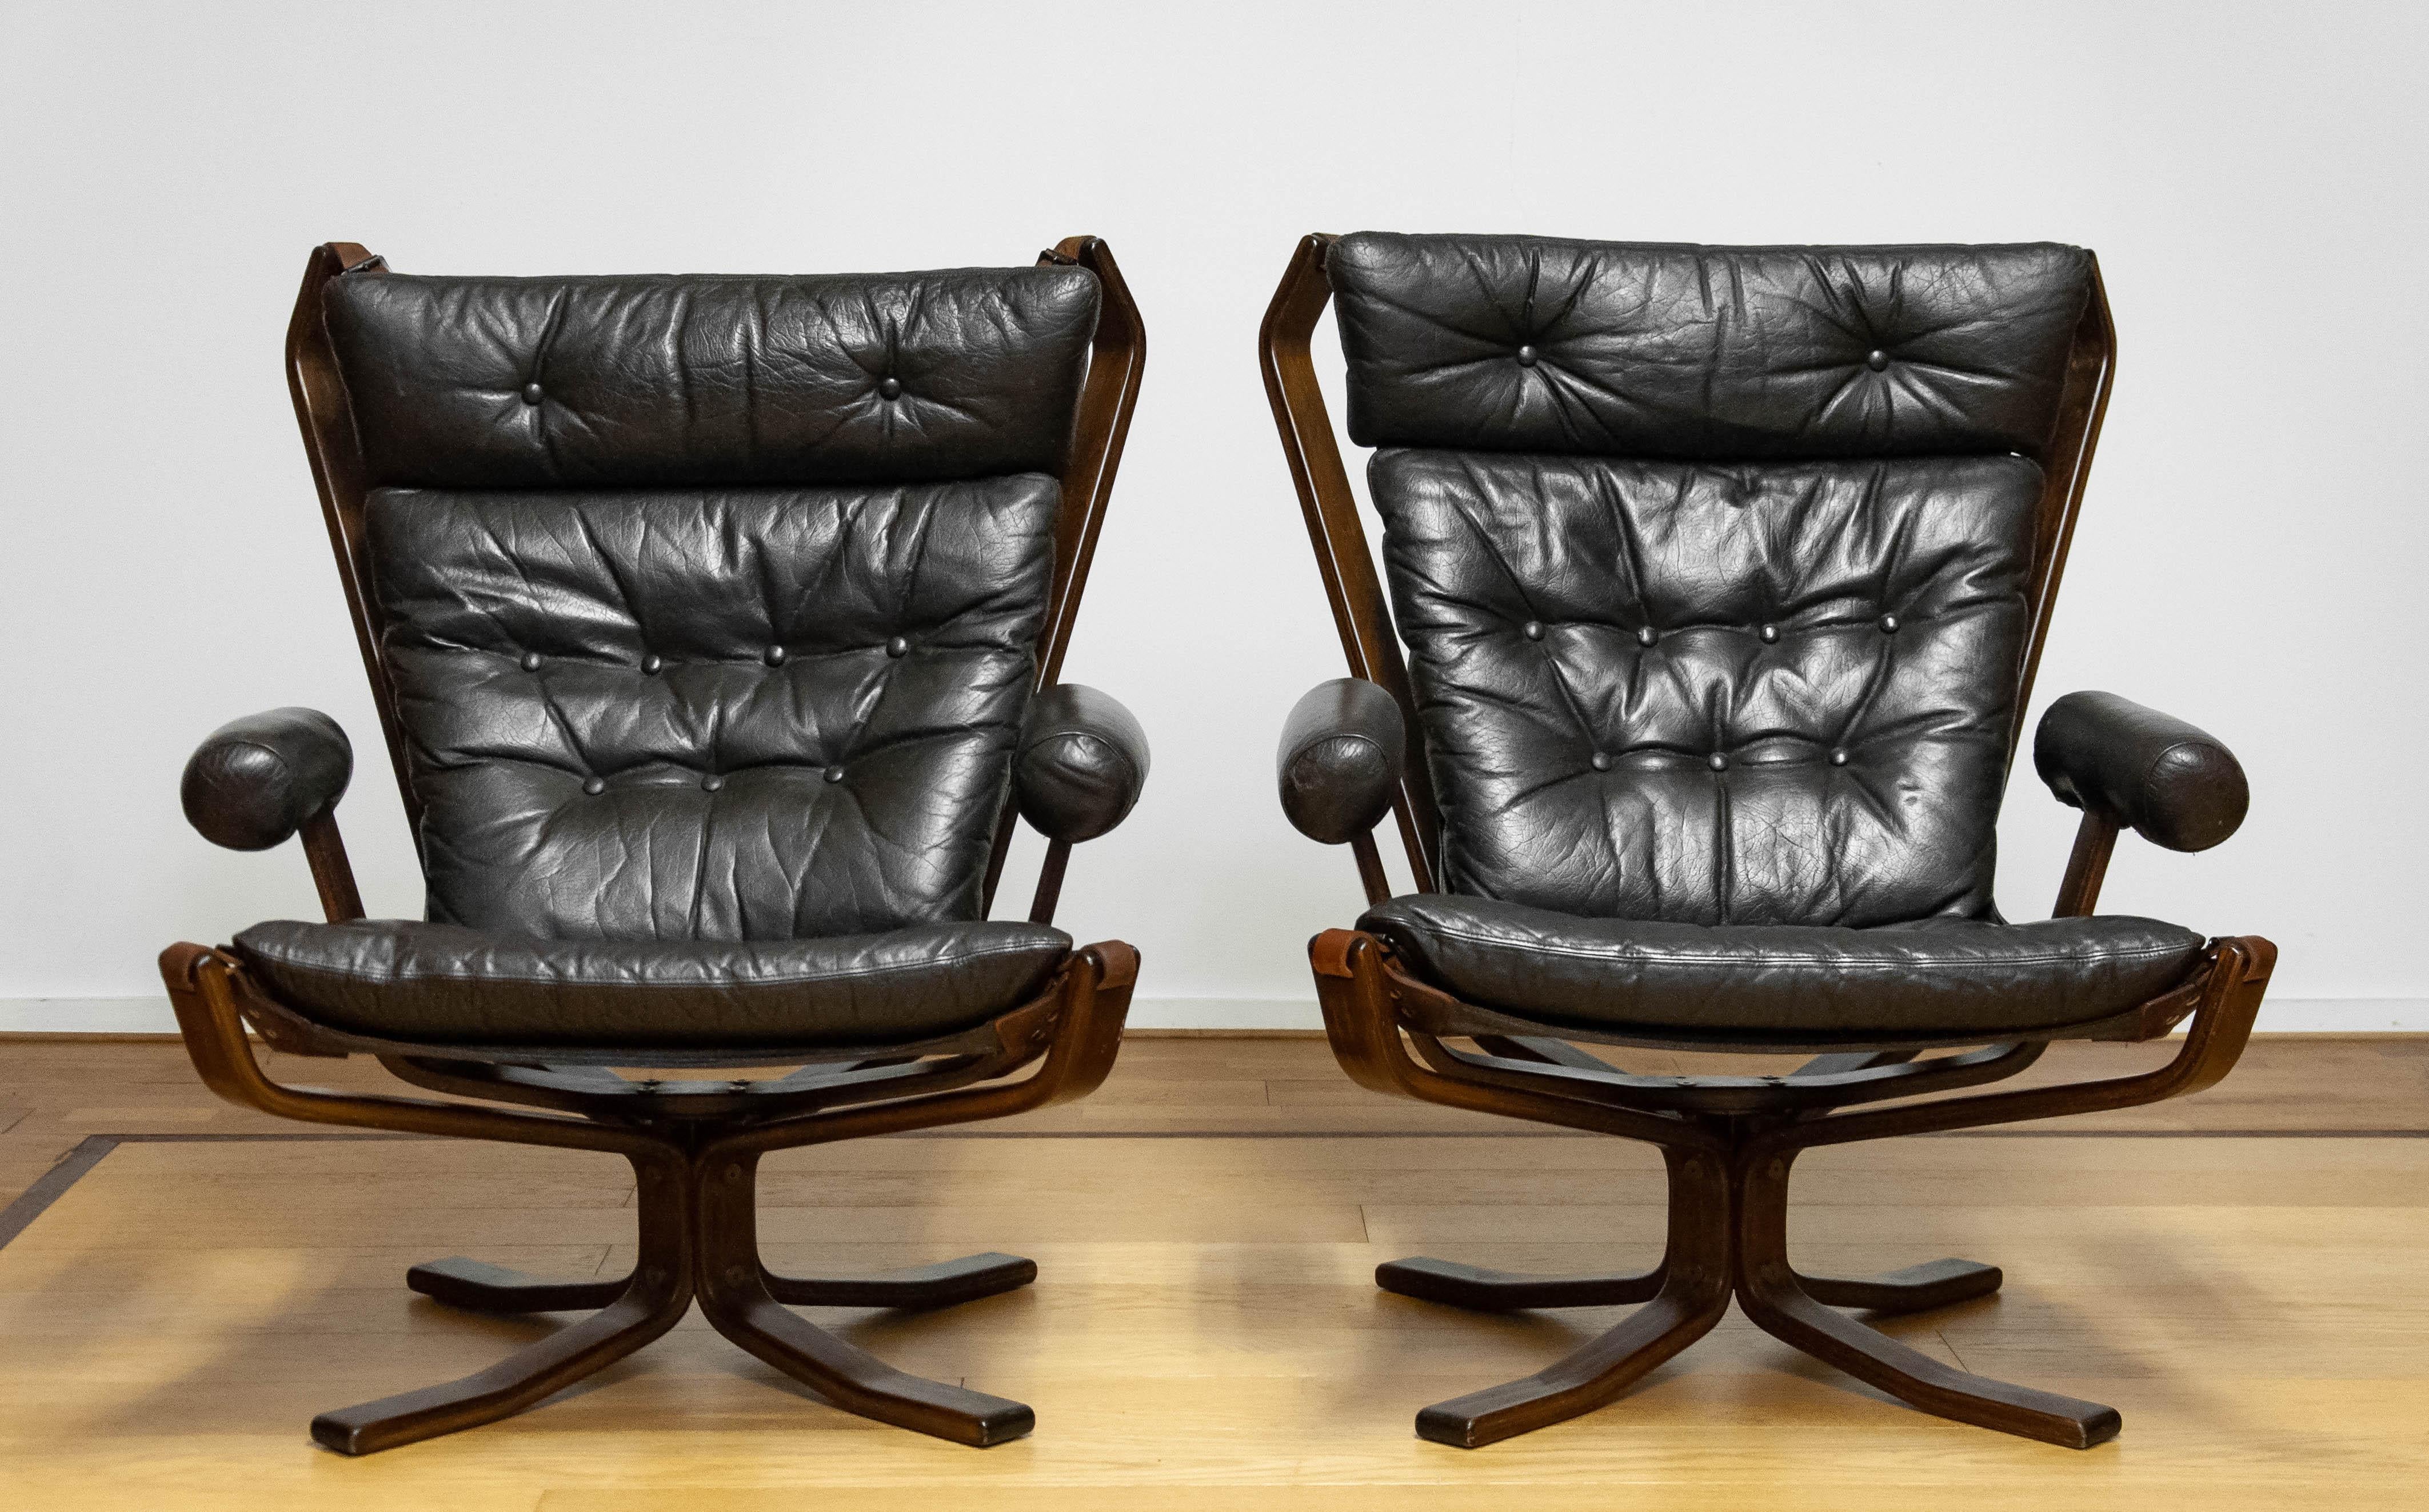 Paar schöne seltene Sessel Modell 'Superstar' entworfen von Sigurd Ressel und hergestellt von Trygg Mobler in Dänemark.
Diese Modelle wurden in limitierter Auflage hergestellt.
Auch bekannt unter dem Namen 